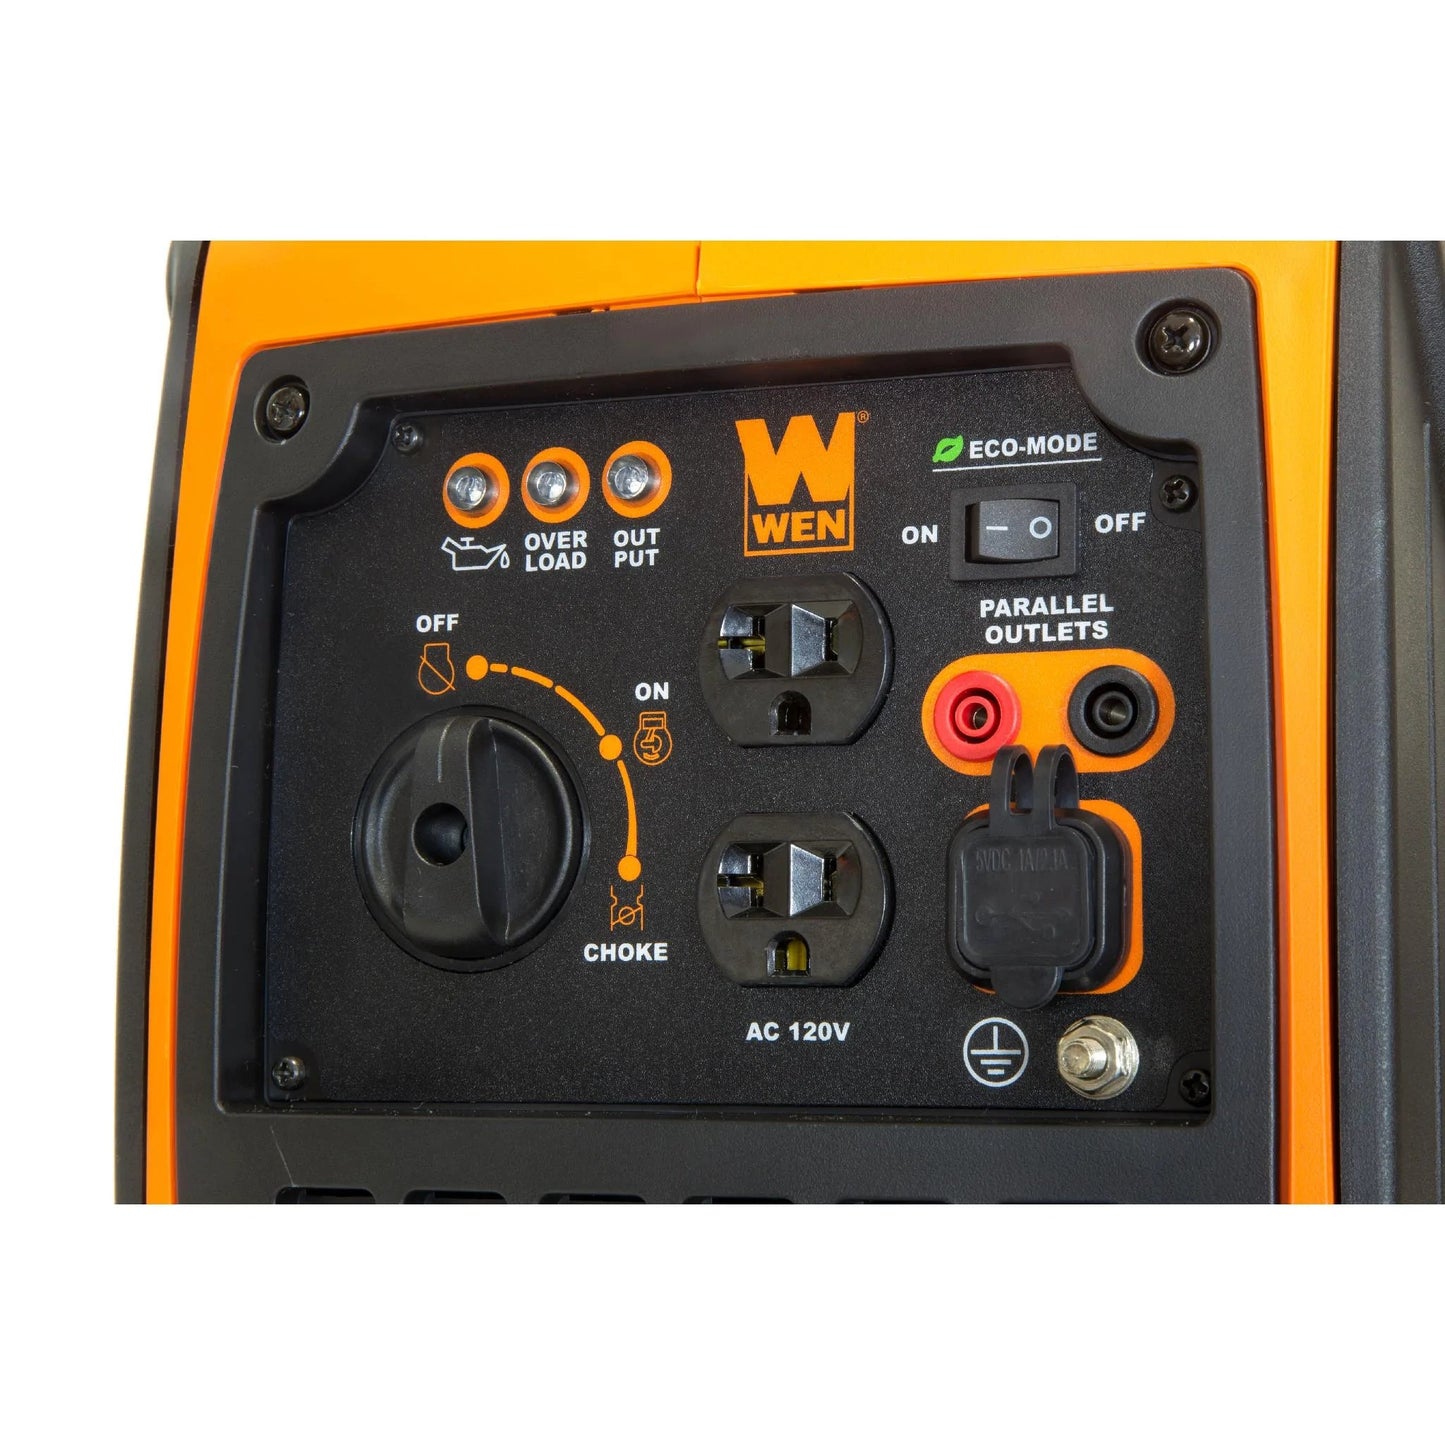 Control panel del genearador WEN 1250W inverter con 2 receptaculos AC 120V y dos USB 5v.